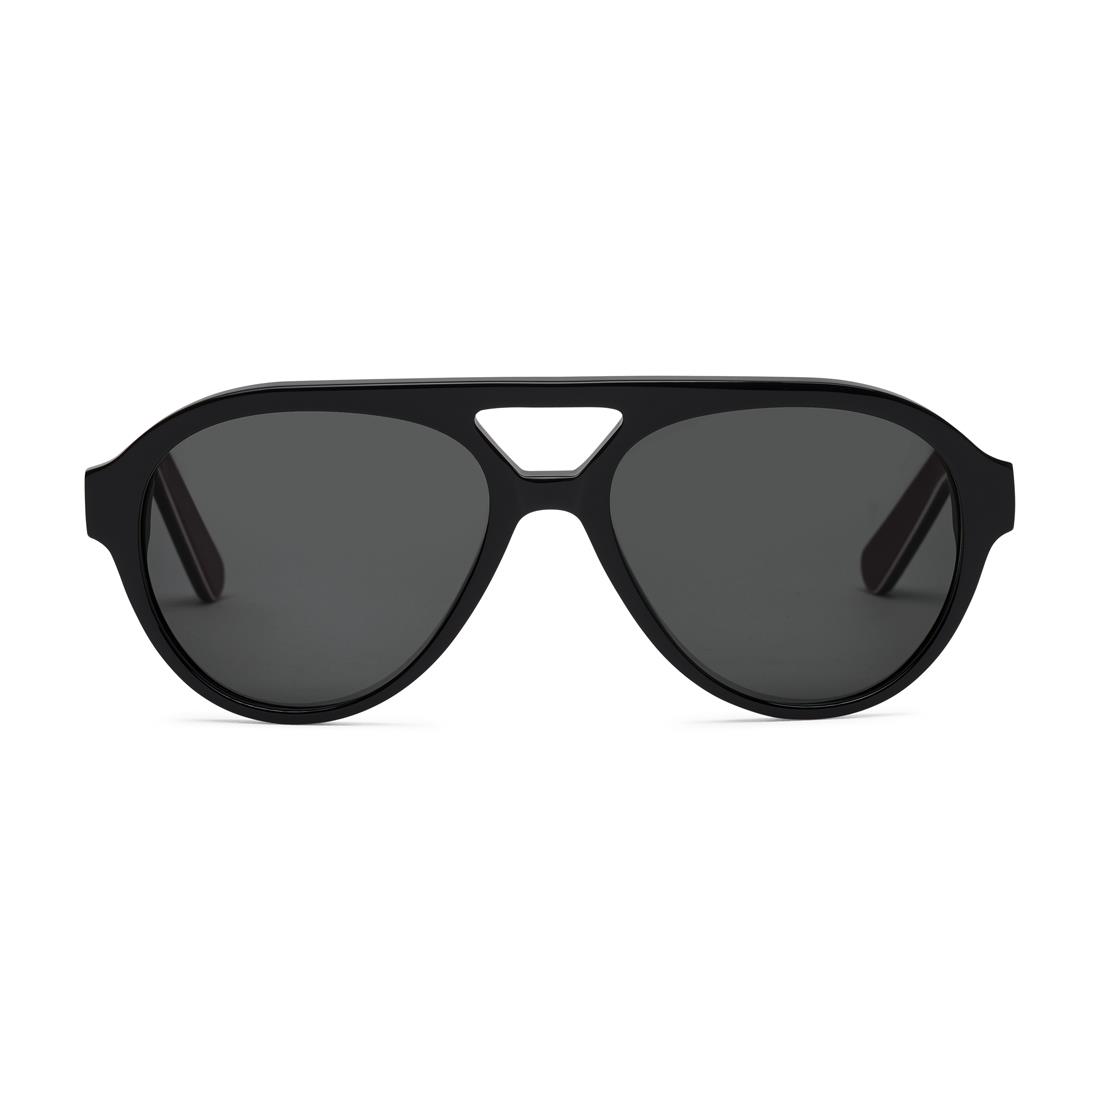 ShopMINIUSA.com: MINI JCW Aviator Sunglasses